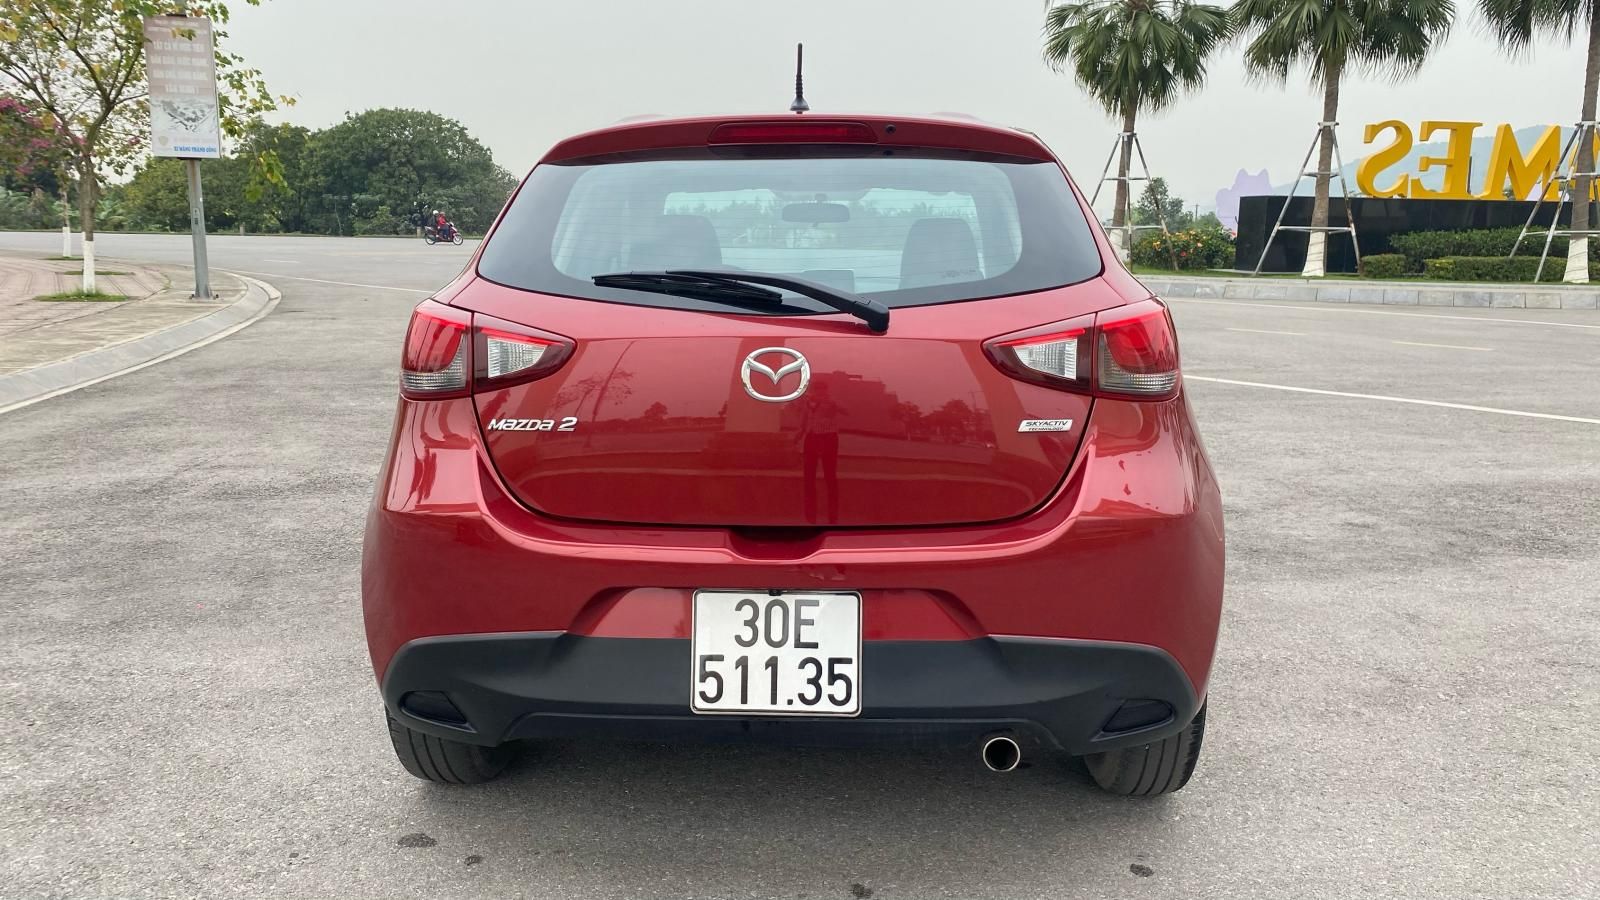 Mazda 2 2017 - Bản Hatchback số tự động 1.5 xe gia đình đẹp